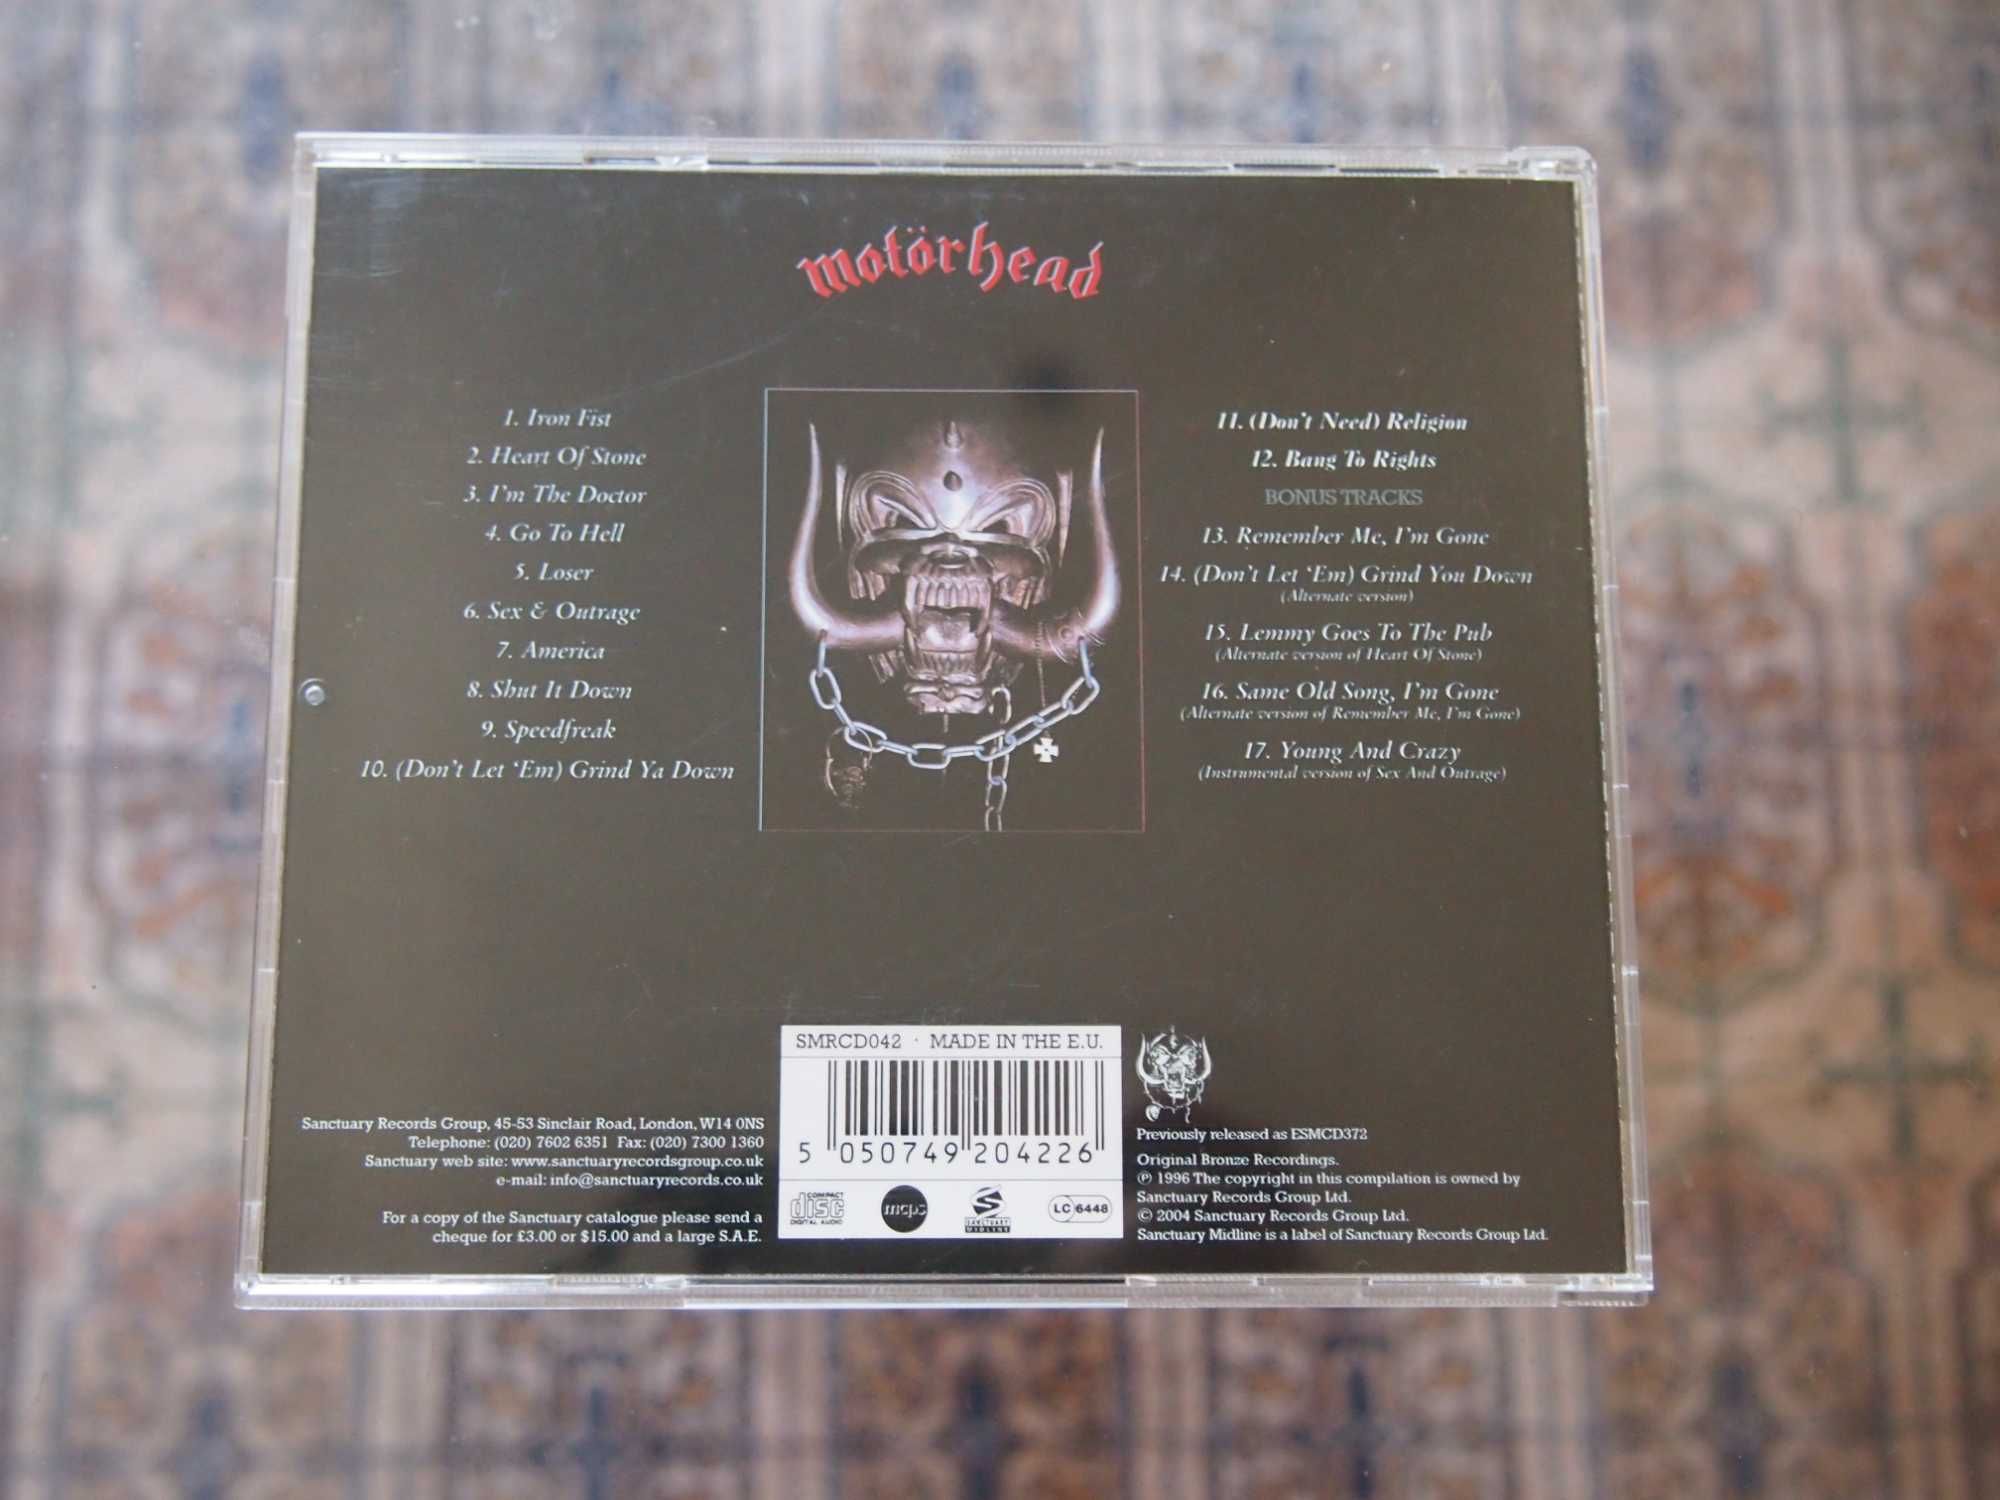 Motorhead "Iron Fist" cd